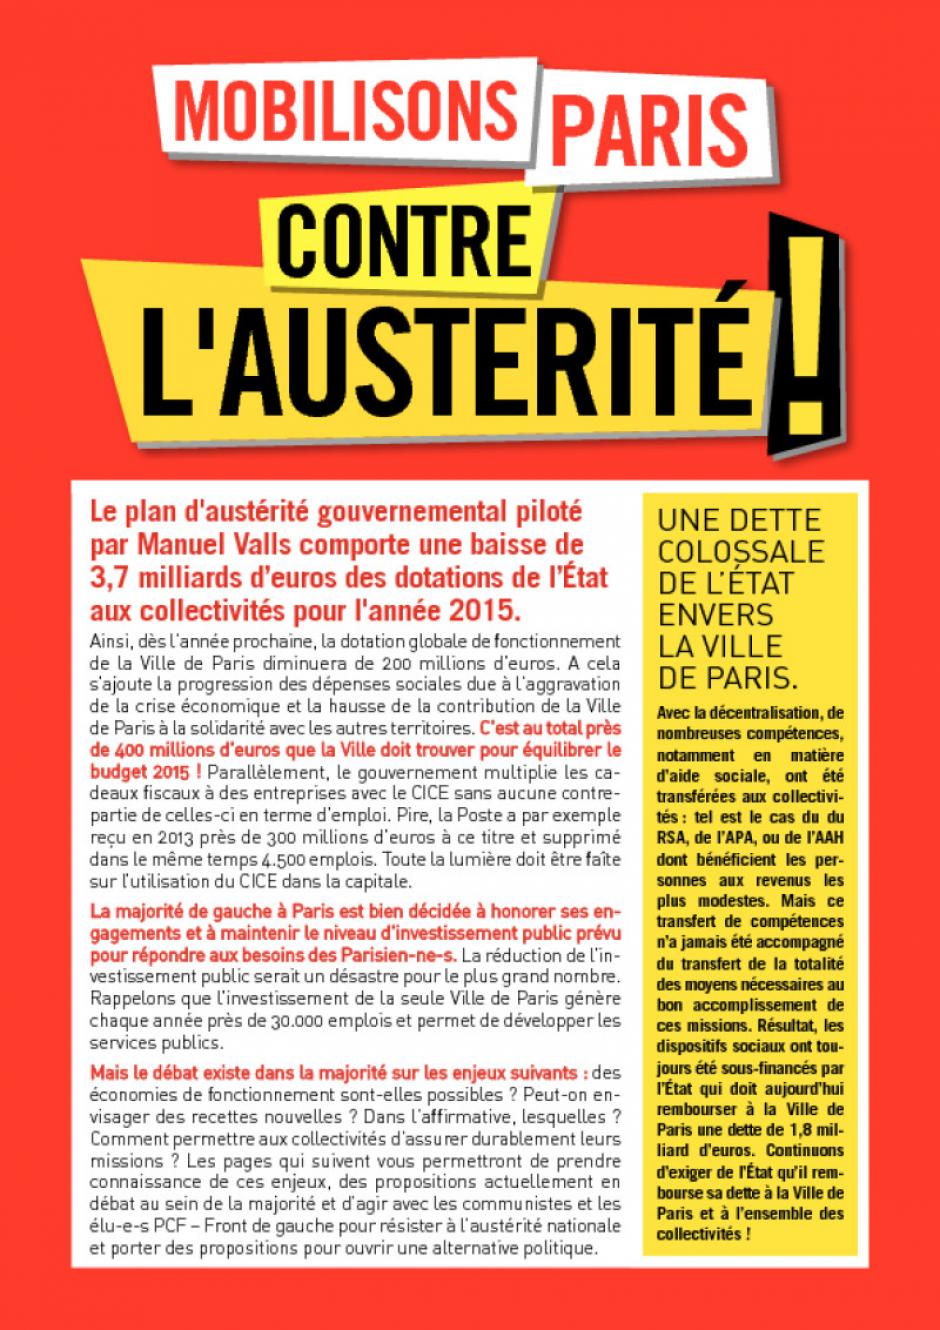 Mobilisons Paris contre l'austérité